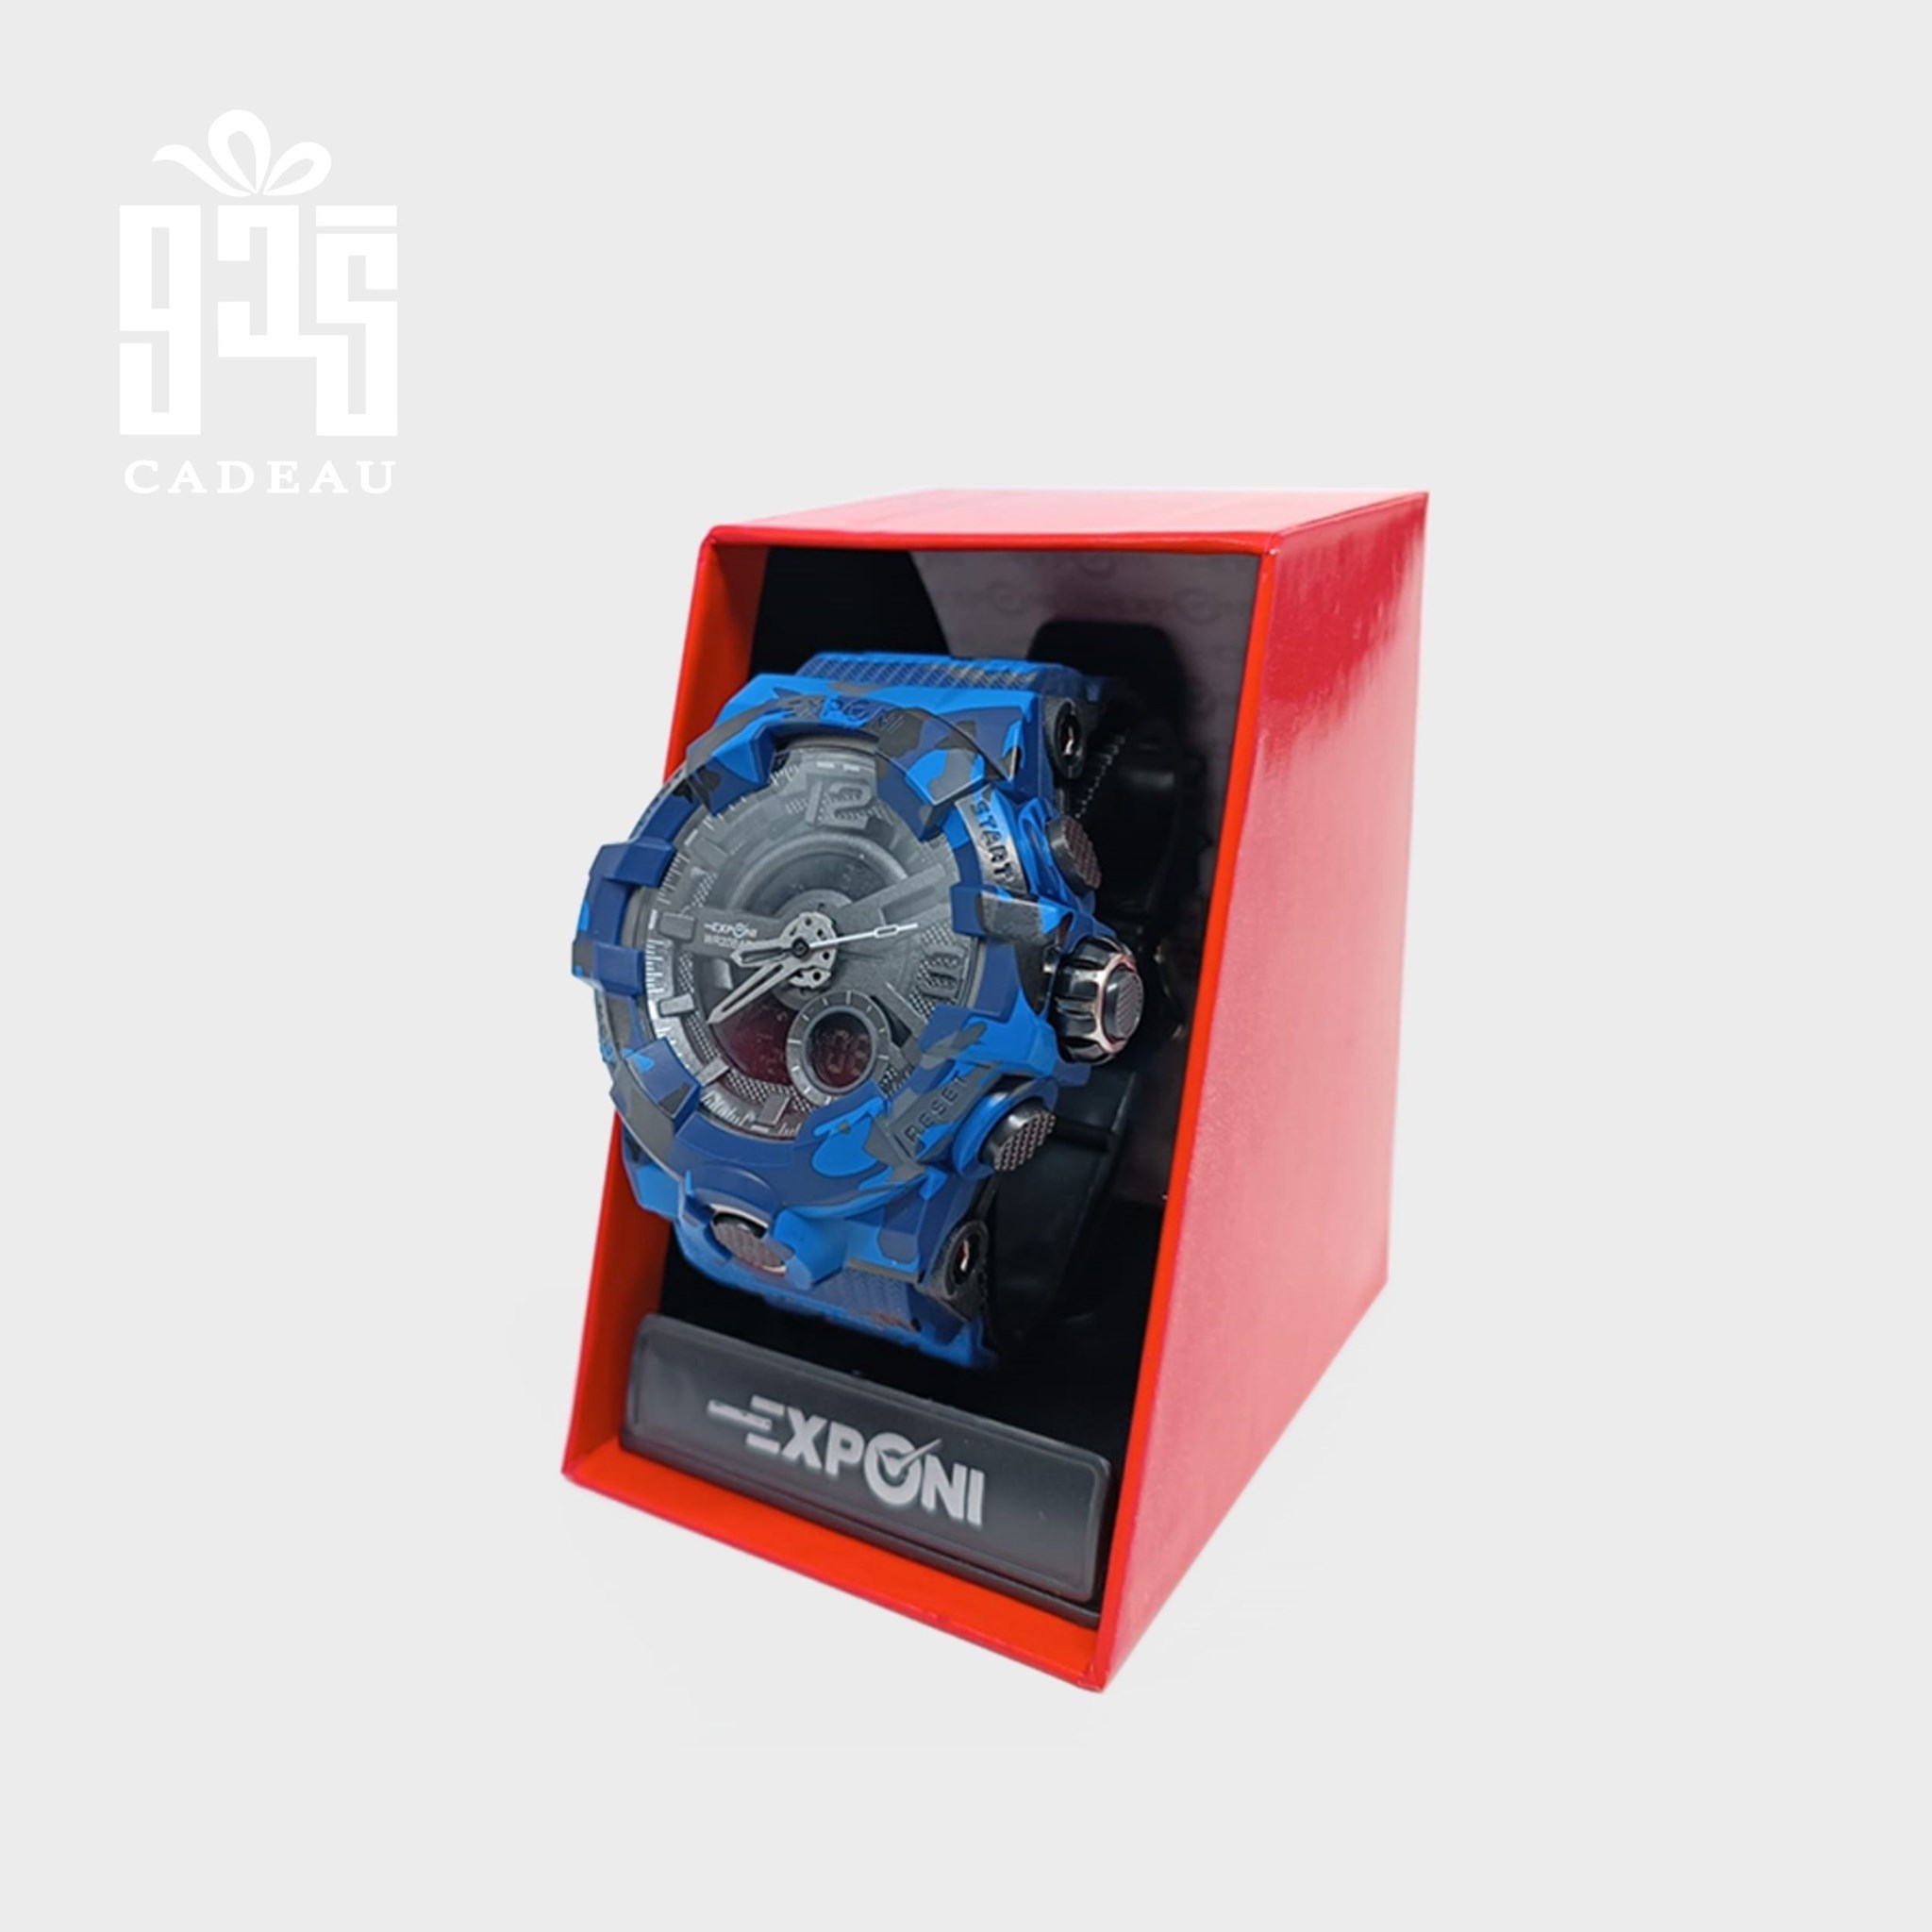 صورة المنتج ساعة Exponi أزرق مكفولة ضد الماء